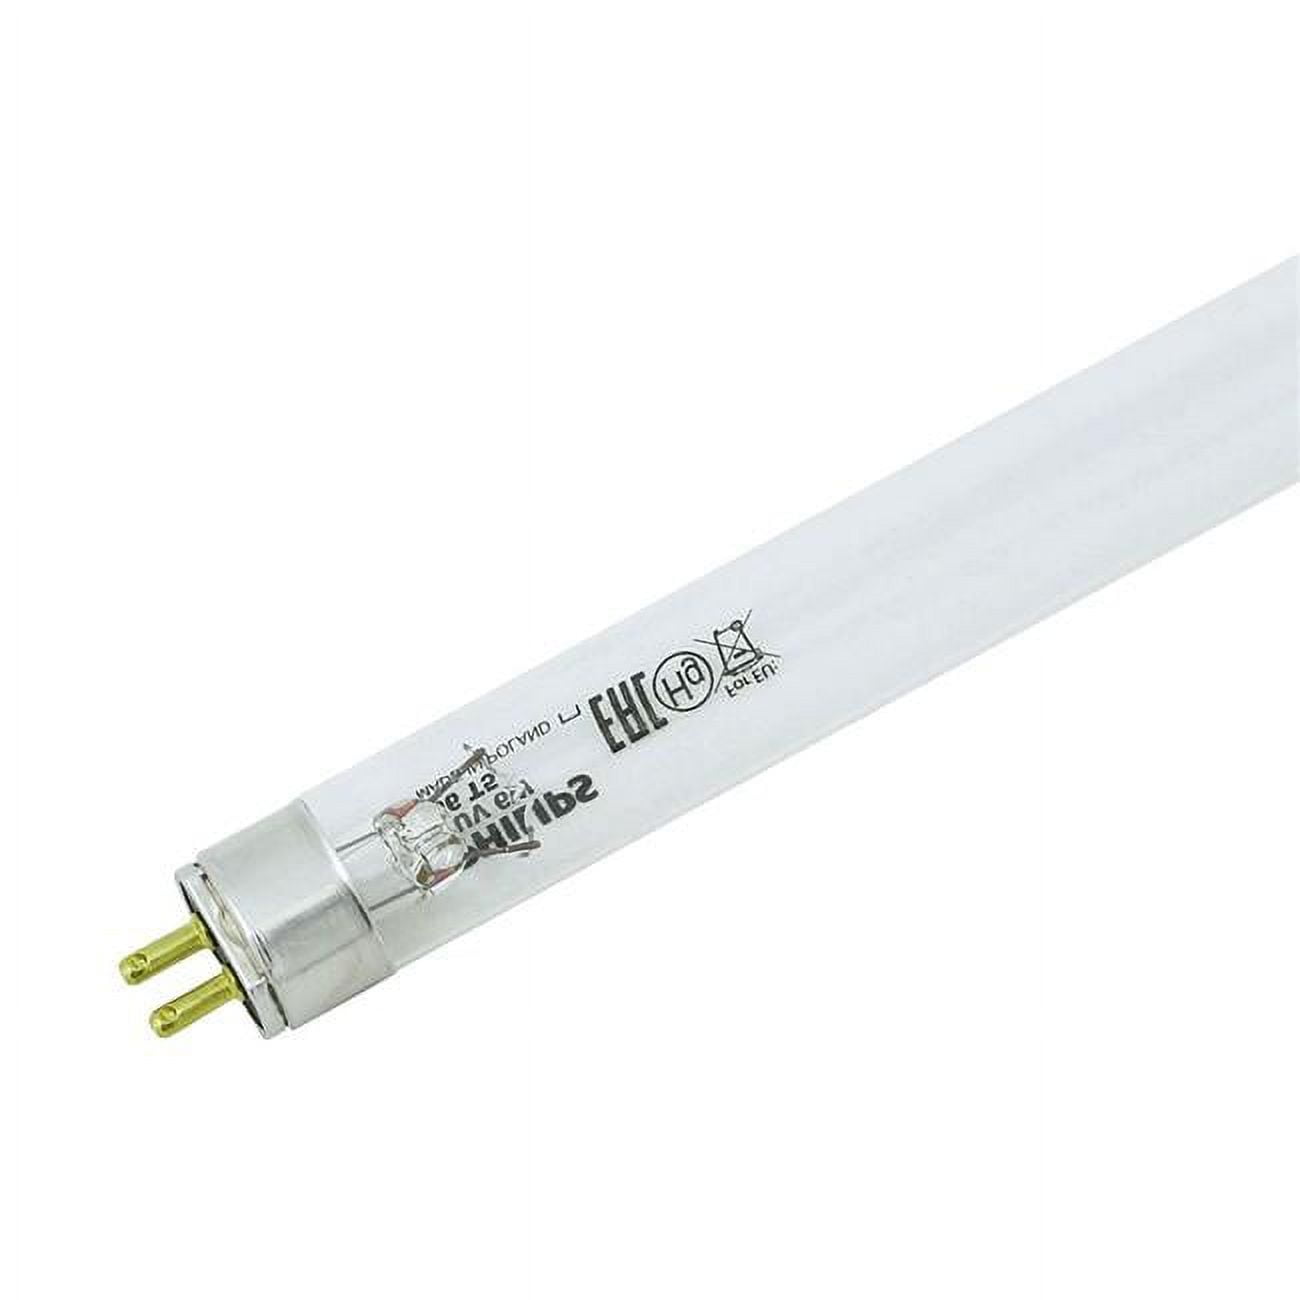 Dny-170218 Tuv Tl Mini 6w T5 Germicidal Fluorescent Light Bulb